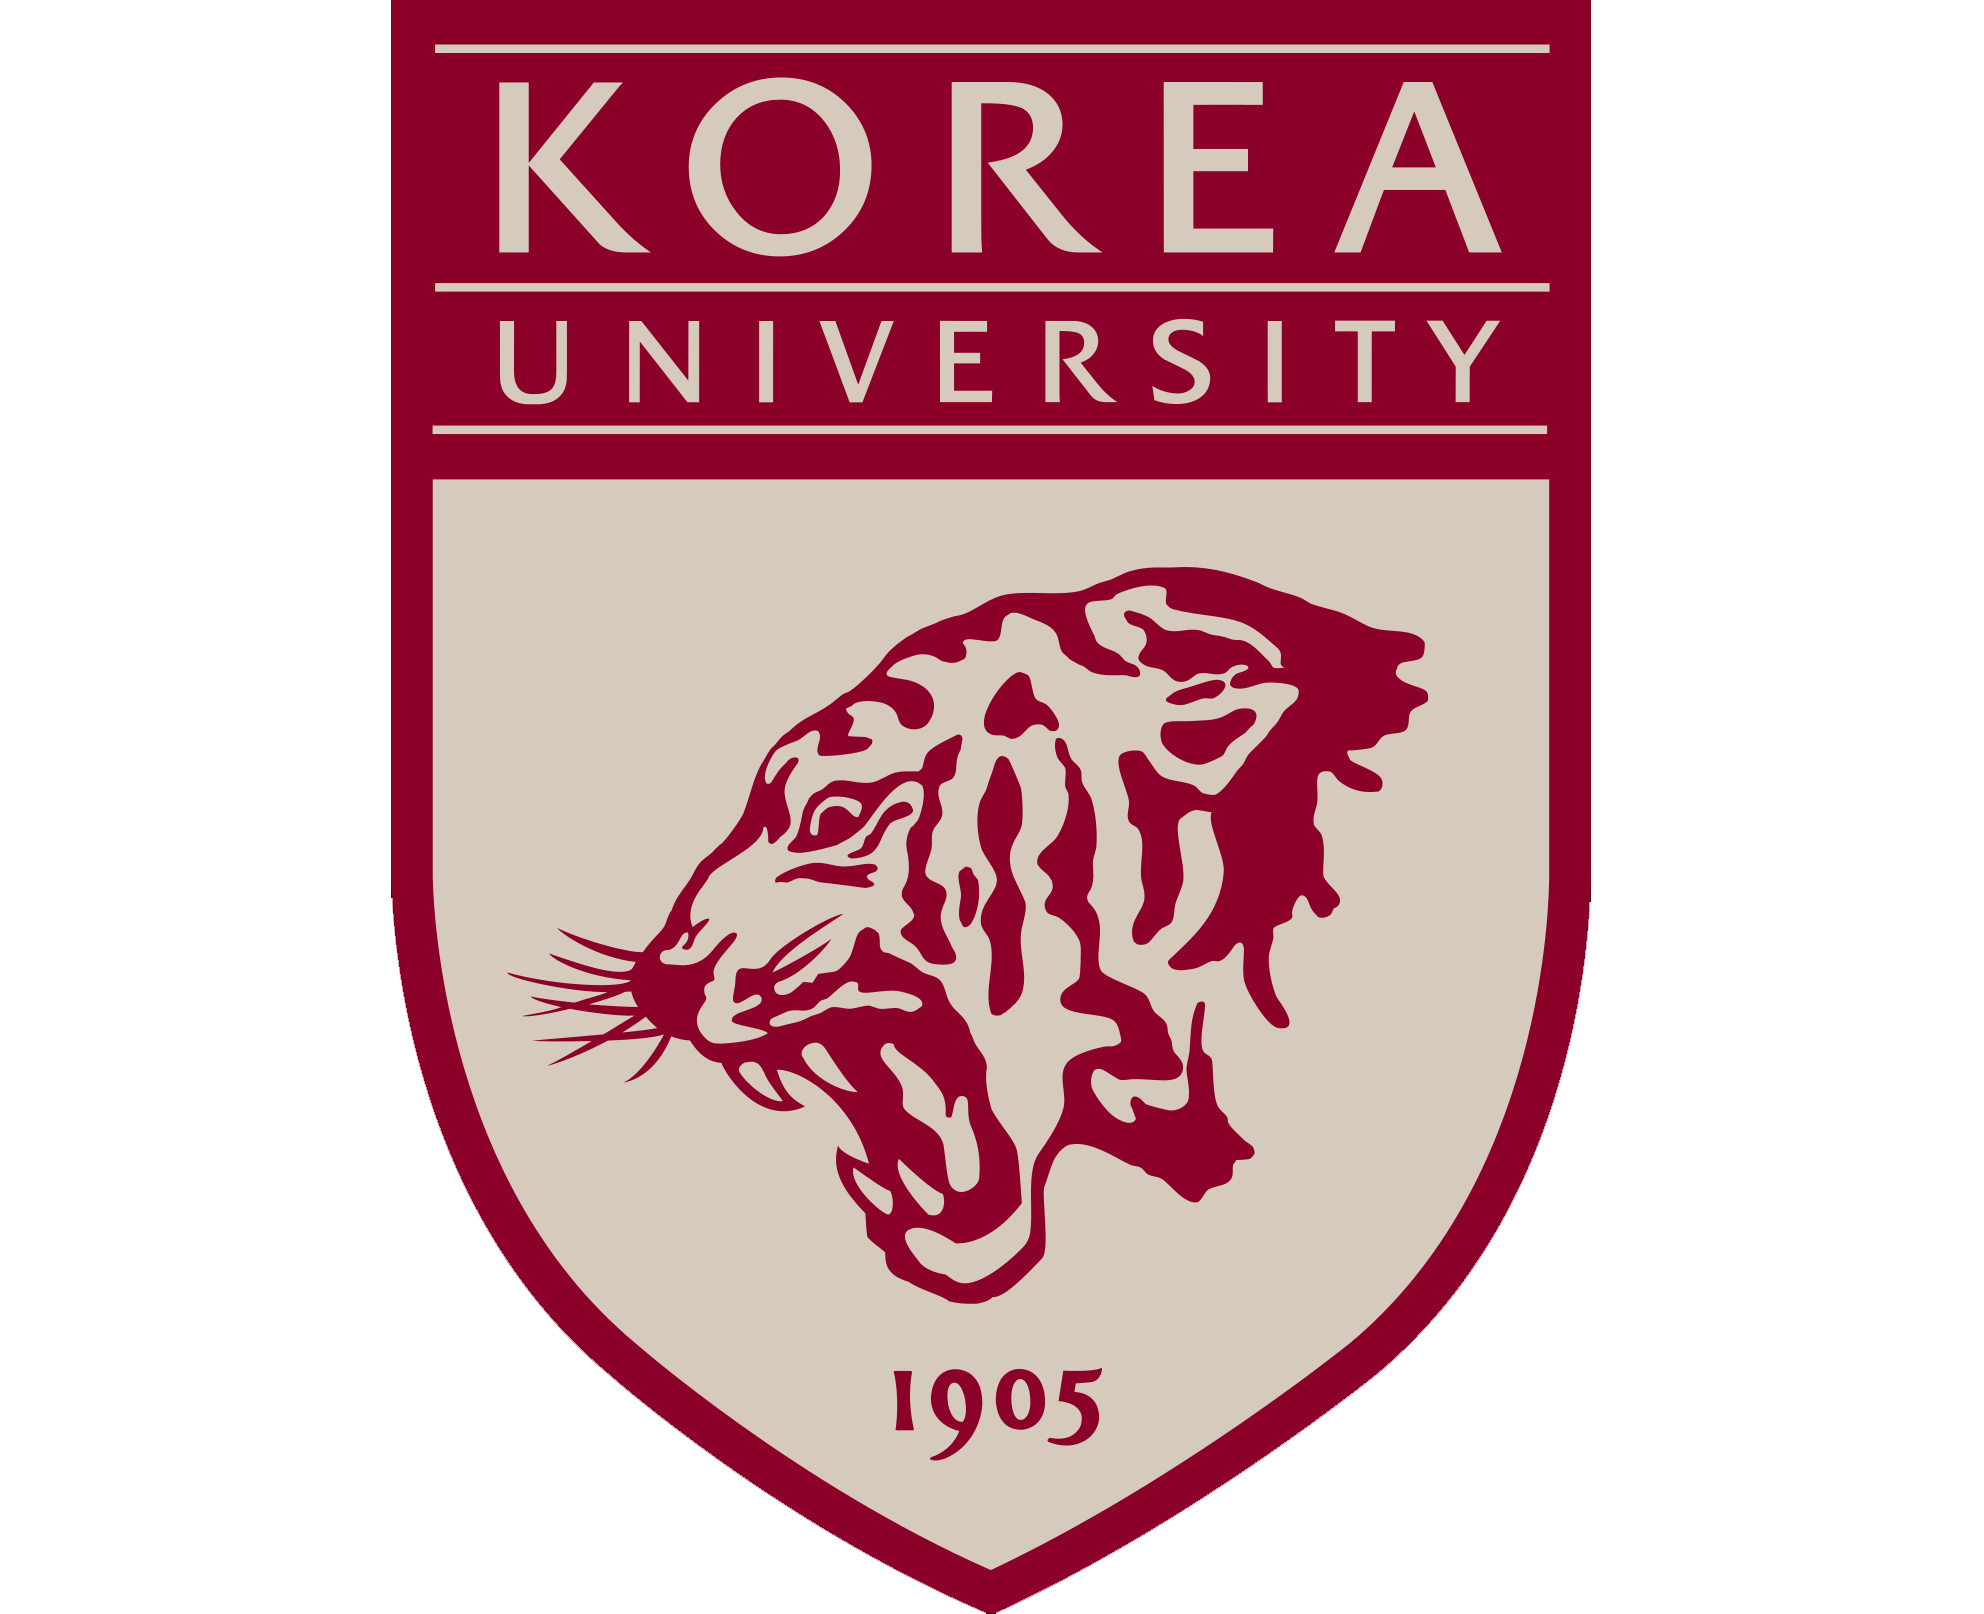 Bosub Kim (KOREA Univ Professor) 전 비스컴디자인 디지털 디자인 교수